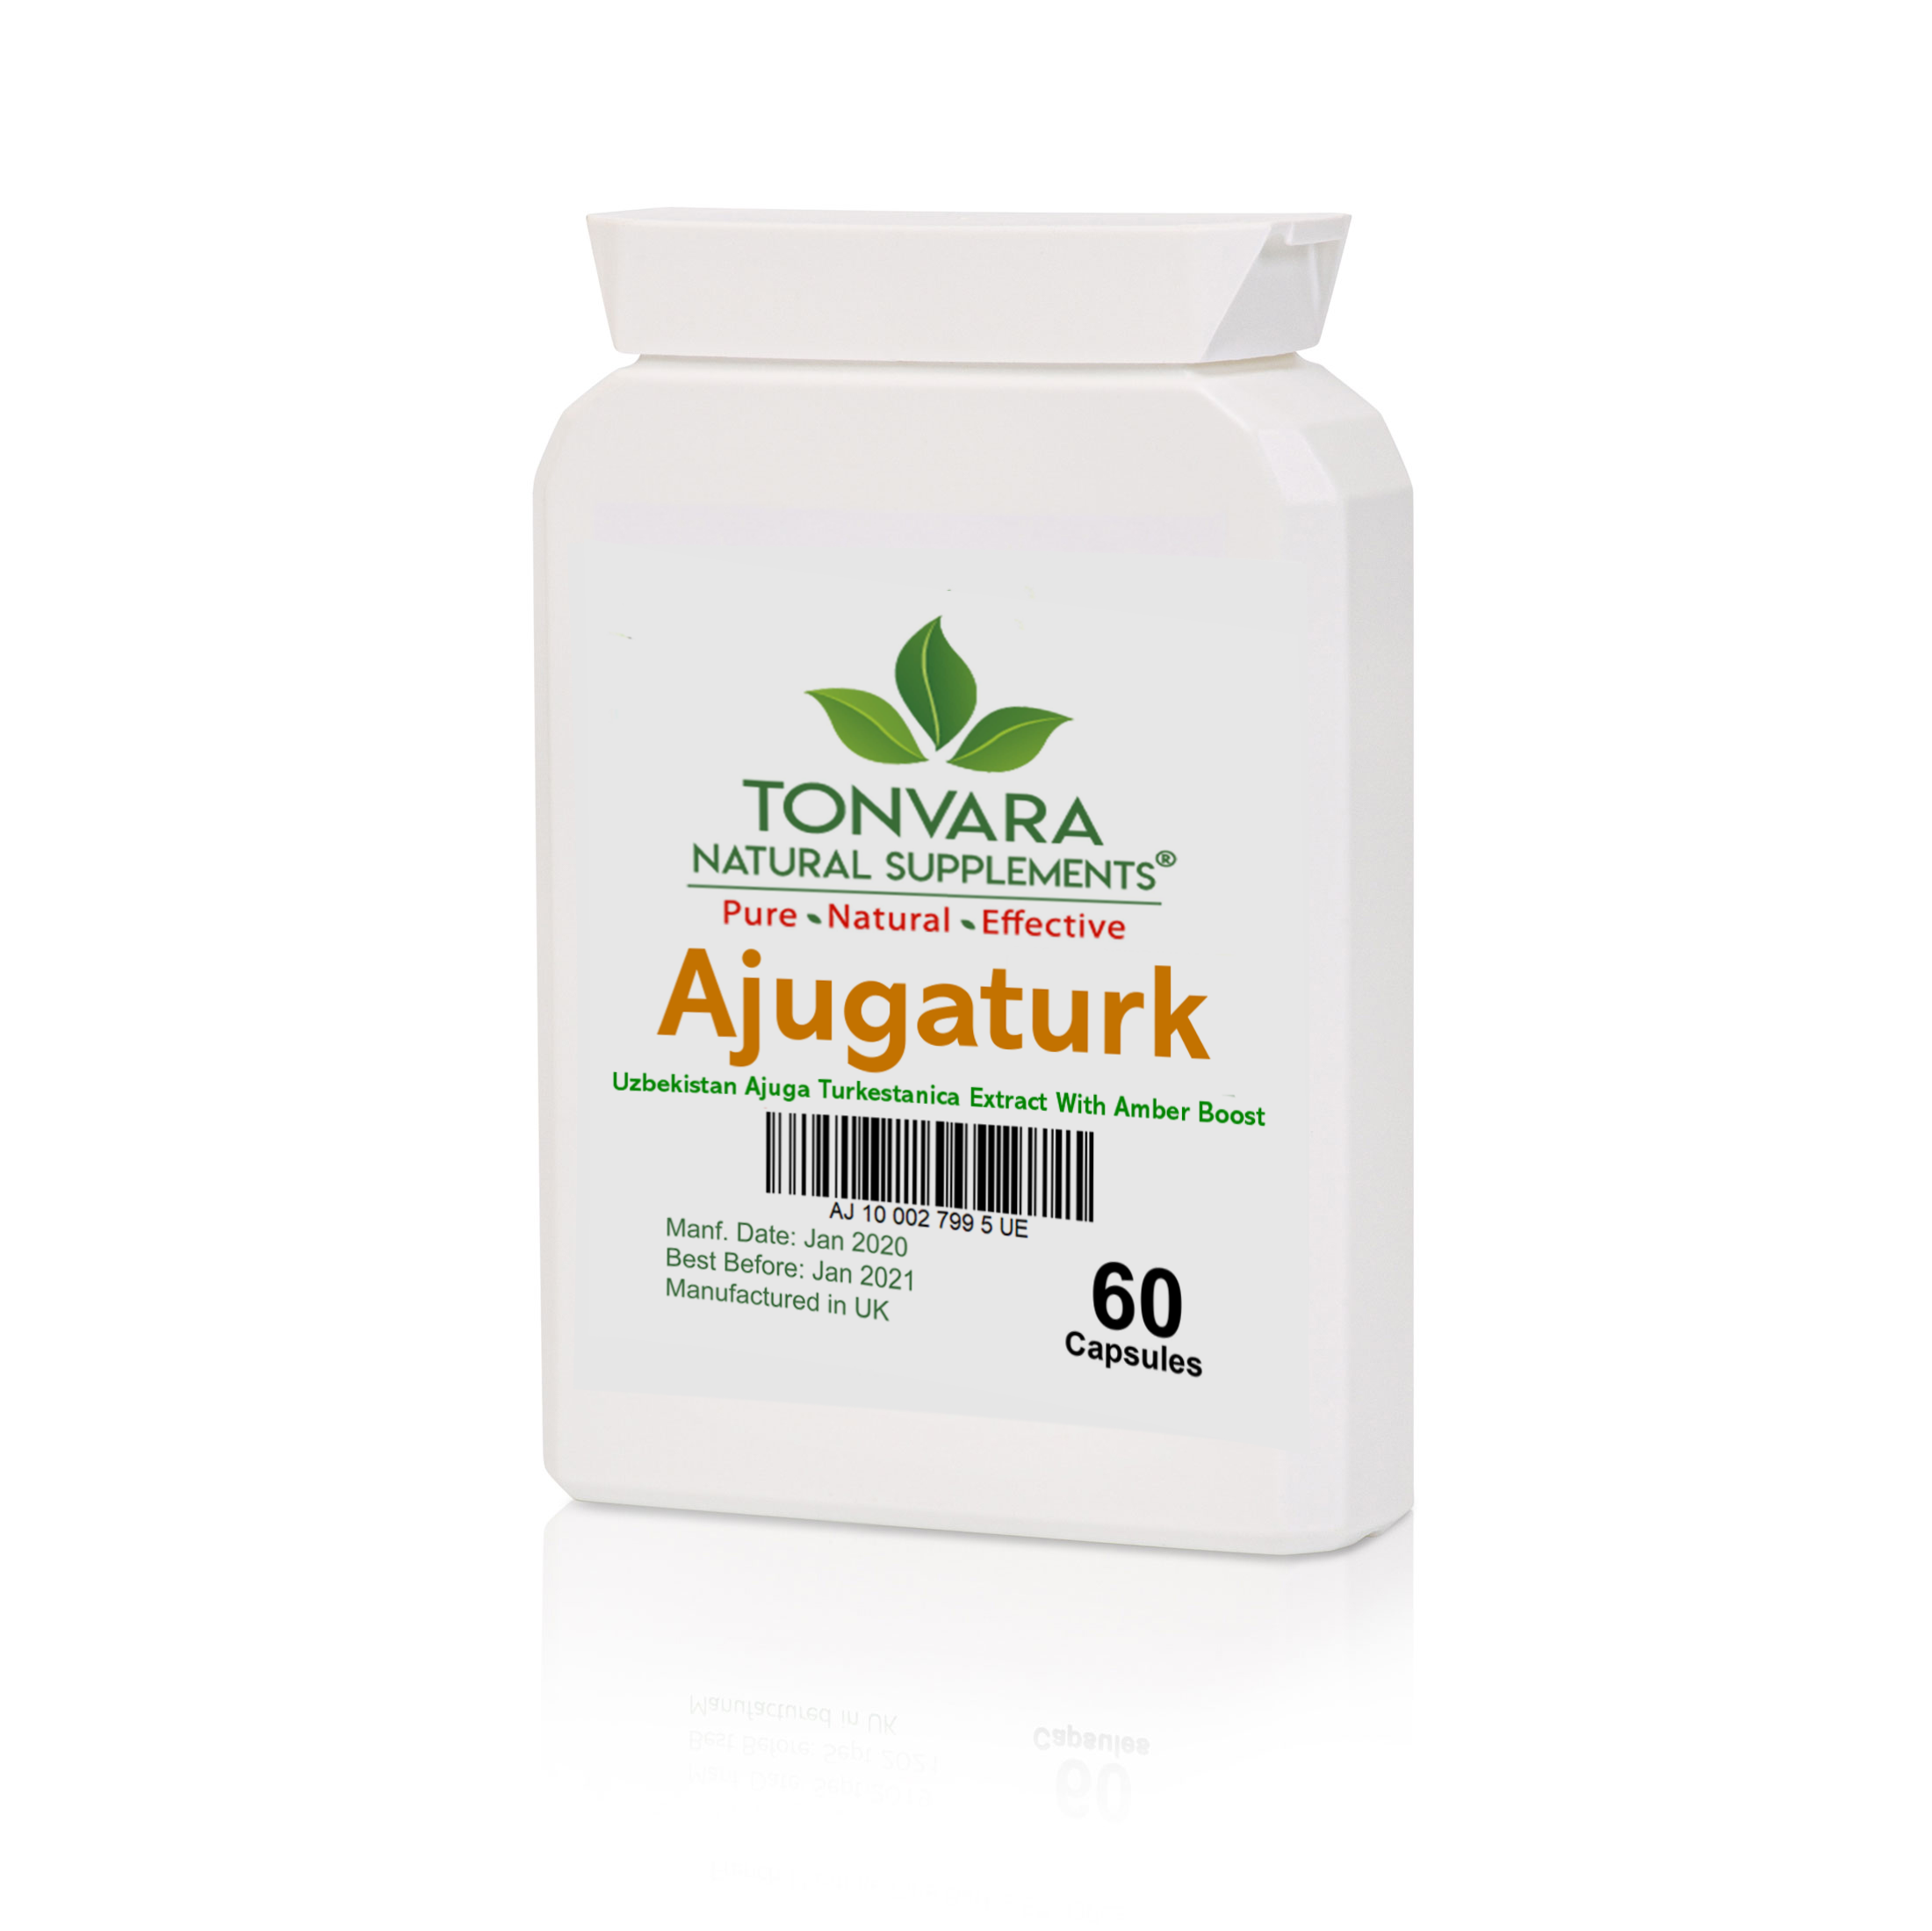 Tonvara AjugaTurk Genuine Uzbekistan Turkesterone from Ajuga Turkestanica Extract with AmberBoost for double the power